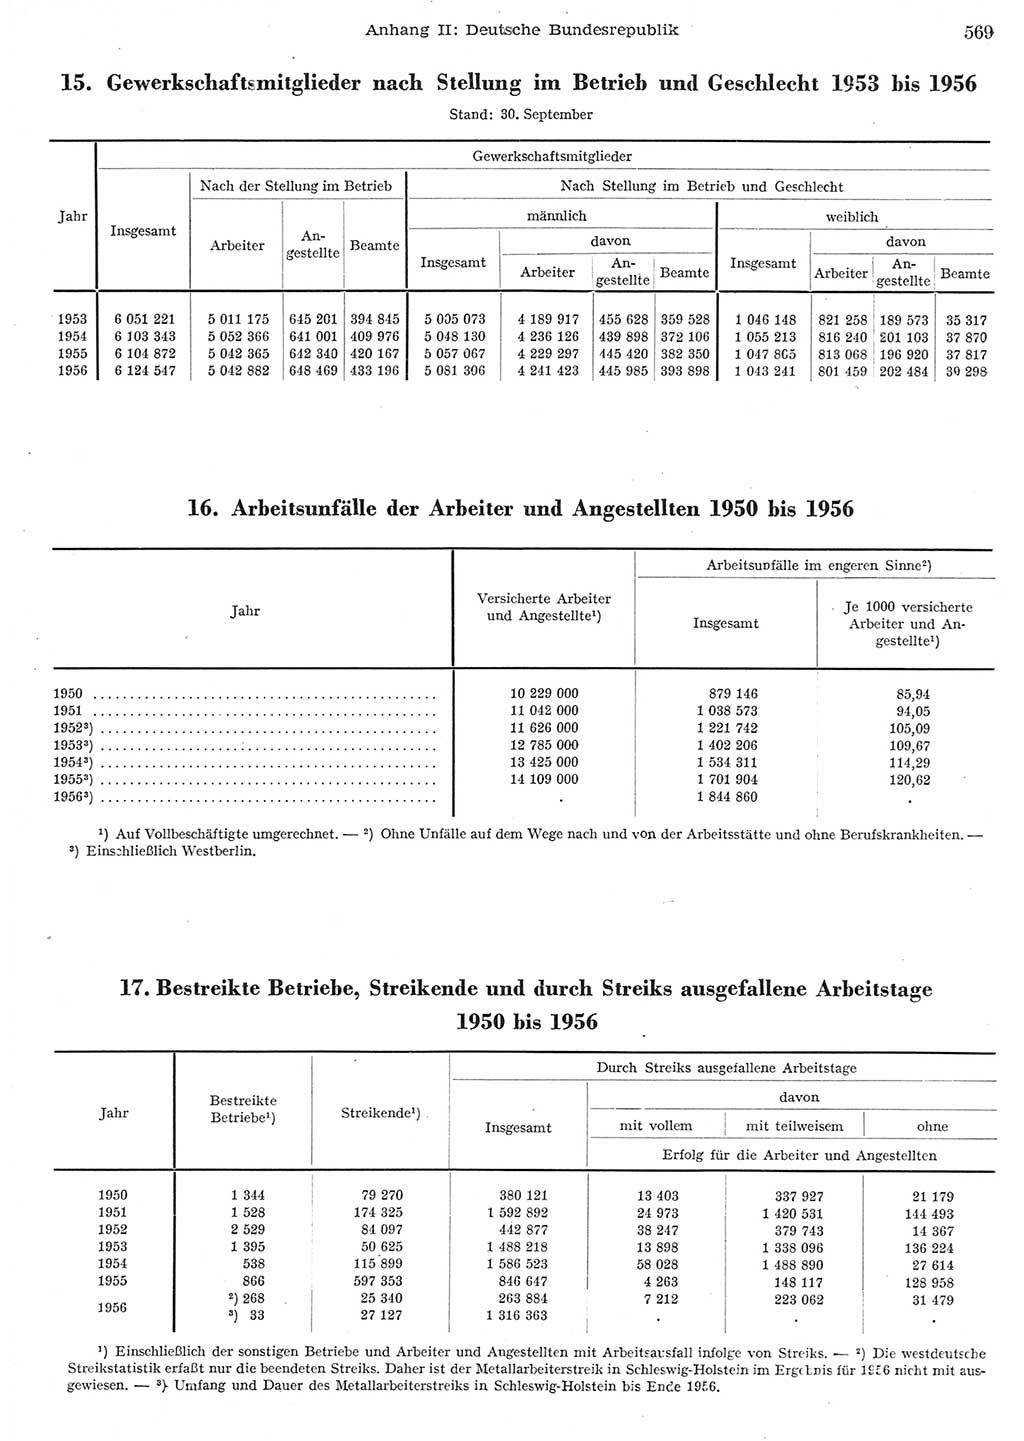 Statistisches Jahrbuch der Deutschen Demokratischen Republik (DDR) 1956, Seite 569 (Stat. Jb. DDR 1956, S. 569)